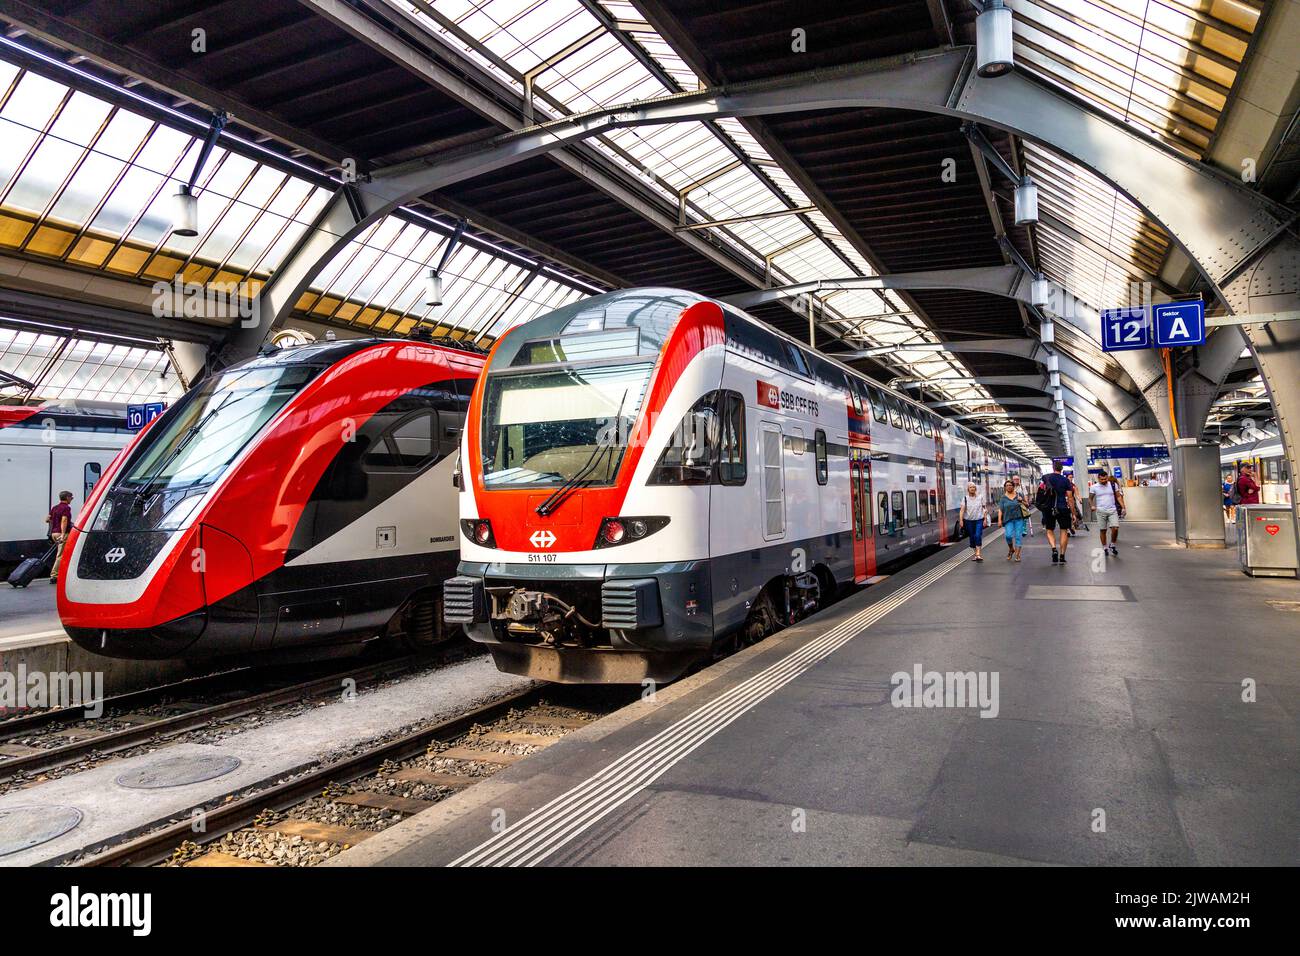 Trains on the platform at Zurich Railway Station, Zurich, Switzerland Stock Photo